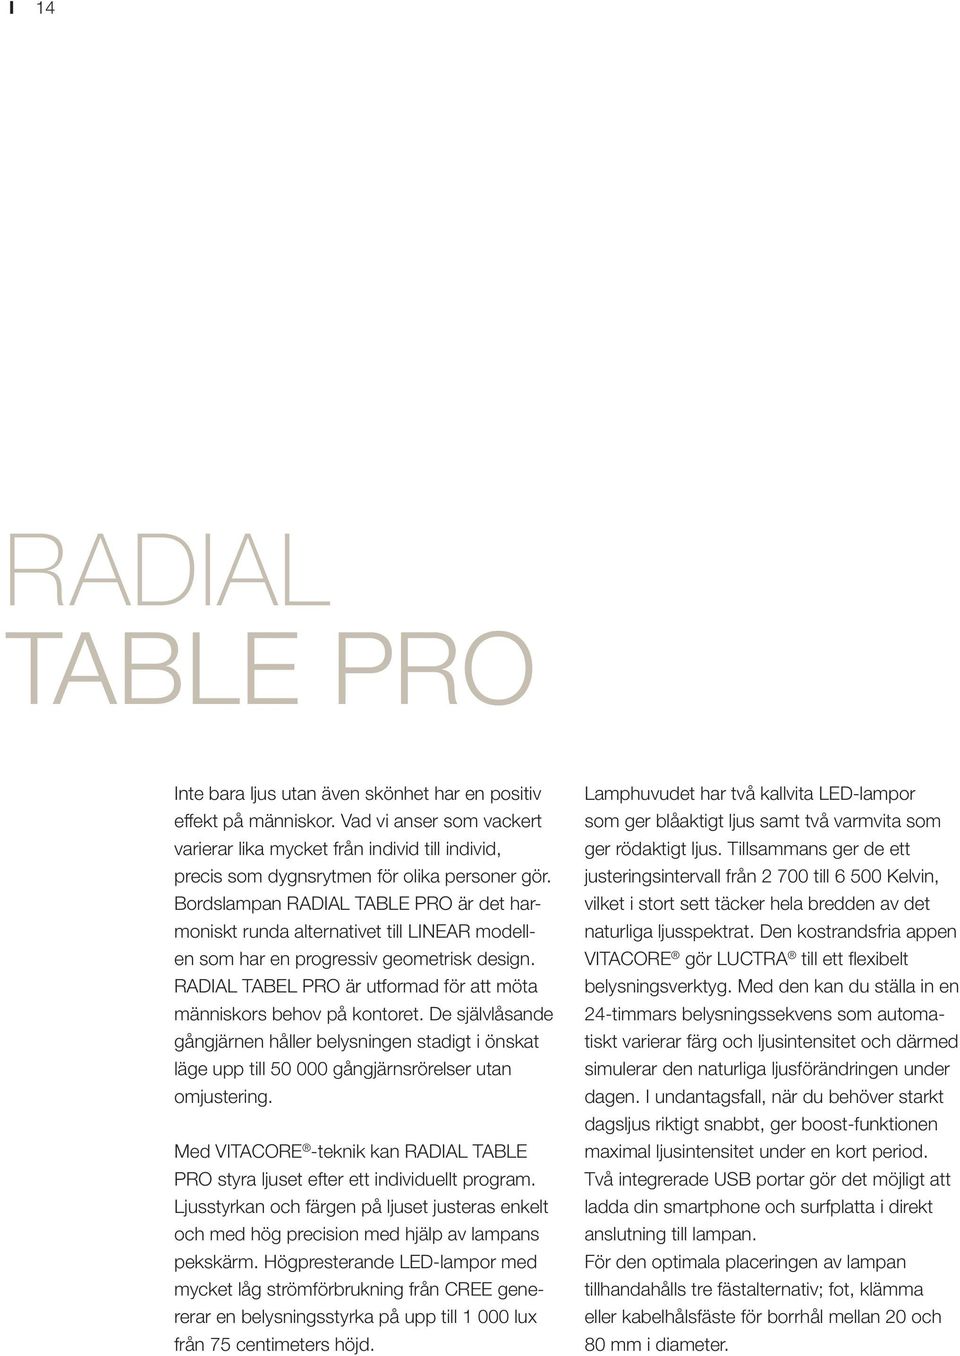 Bordslampan RADIAL TABLE PRO är det harmoniskt runda alternativet till LINEAR modellen som har en progressiv geometrisk design. RADIAL TABEL PRO är utformad för att möta människors behov på kontoret.